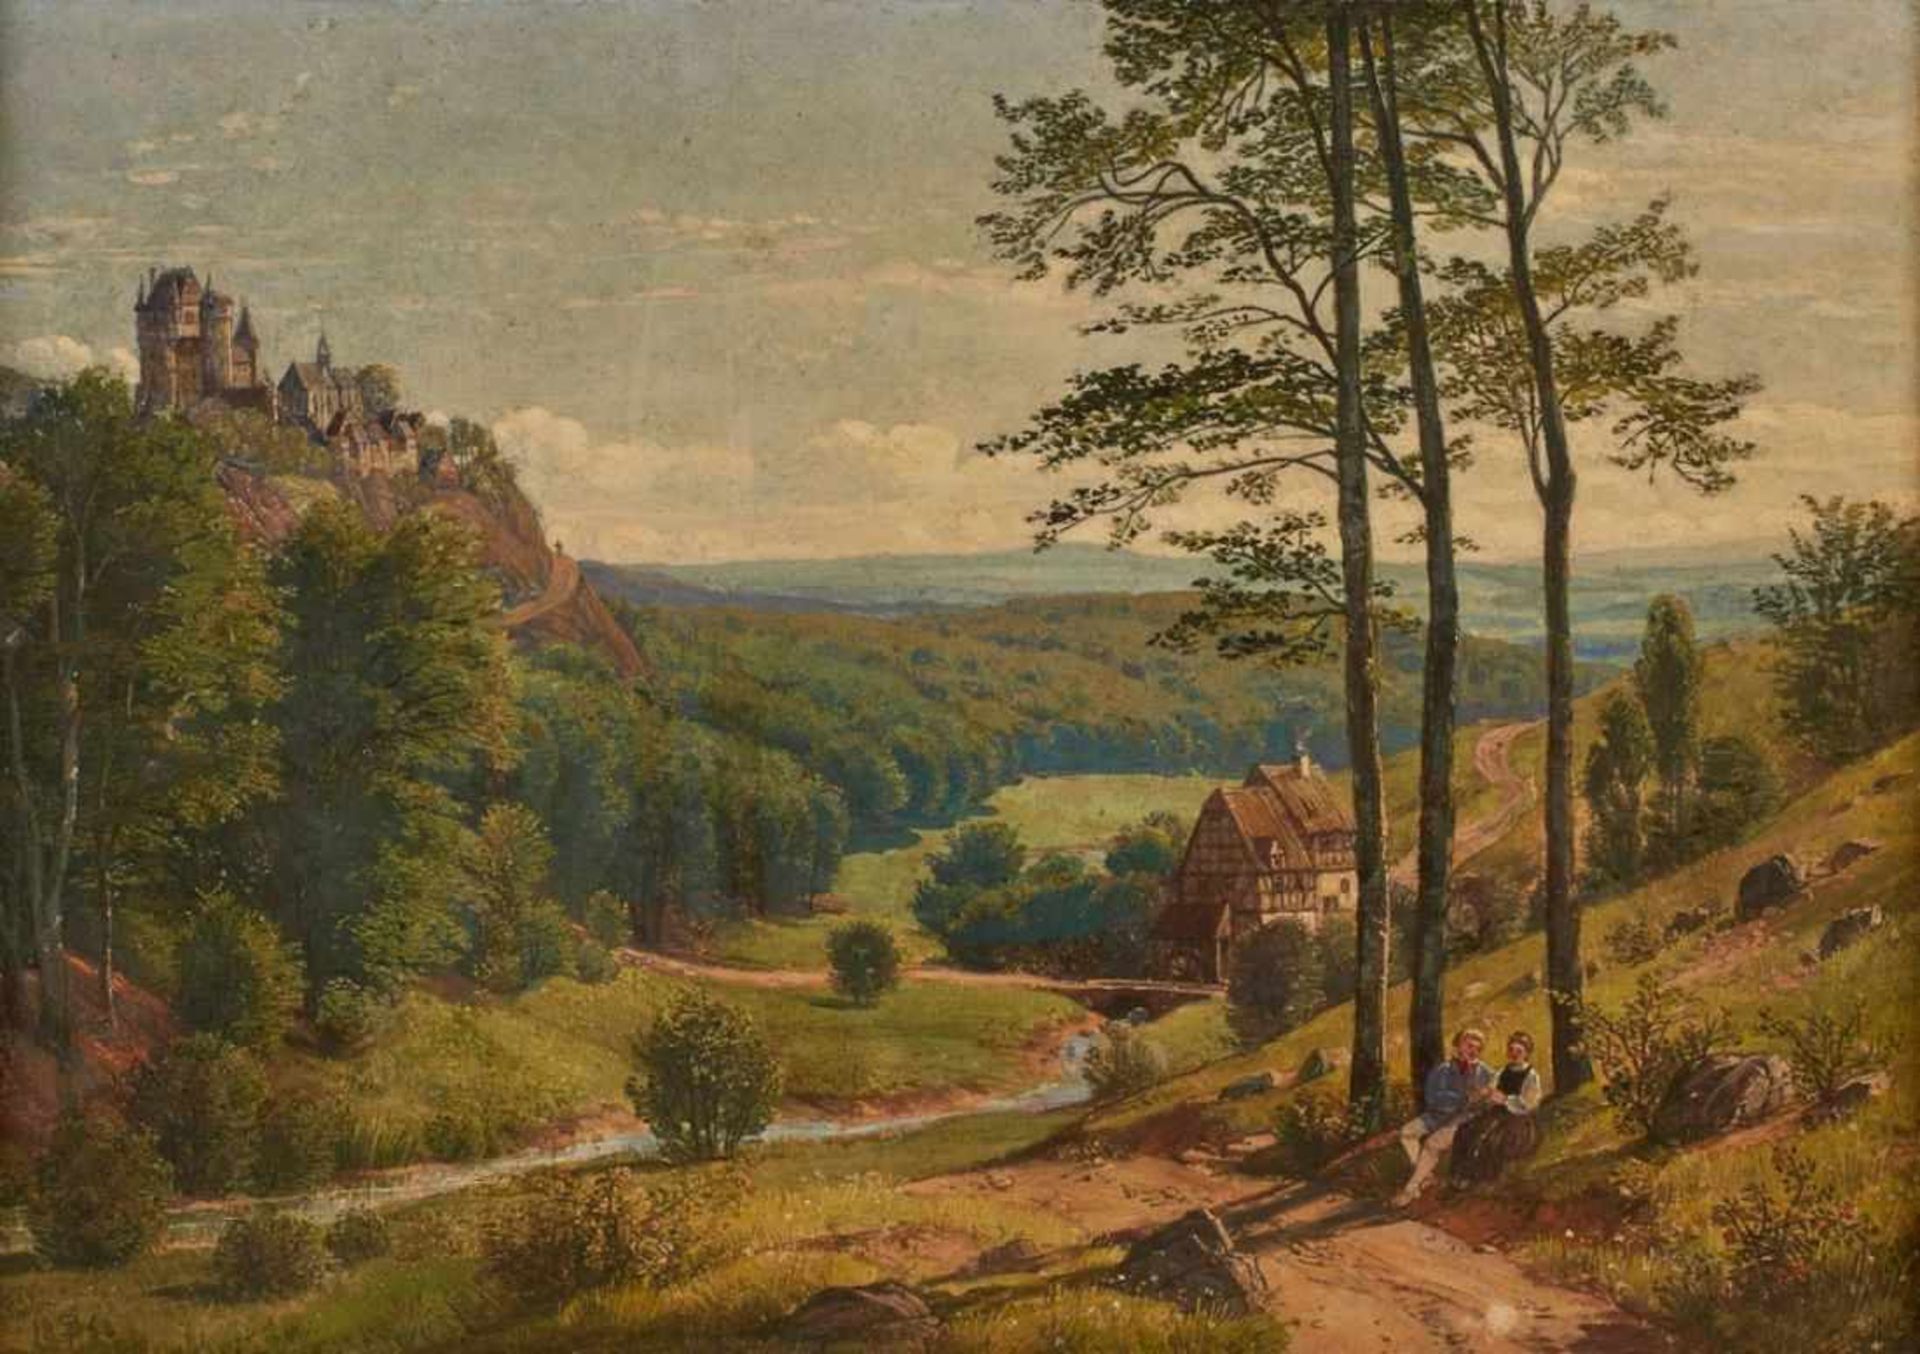 Gemälde Peter Becker 1828 Frankfurt - 1904 Soest Ausbildung am Städelschen Kunstinstitut. Im Raum